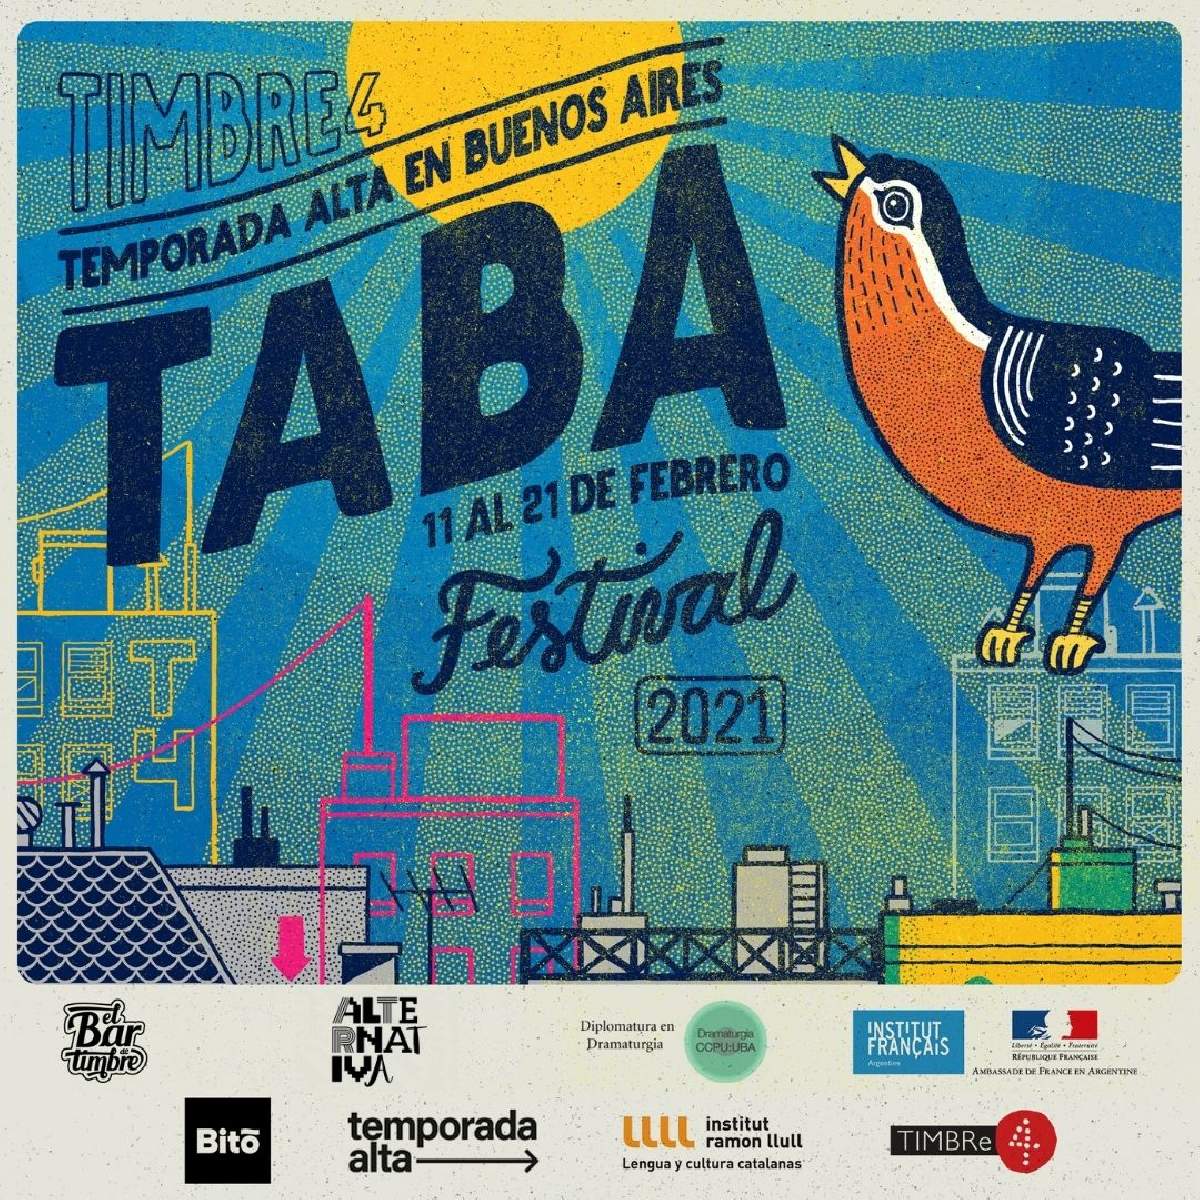 Festival Temporada Alta en Buenos Aires 2021